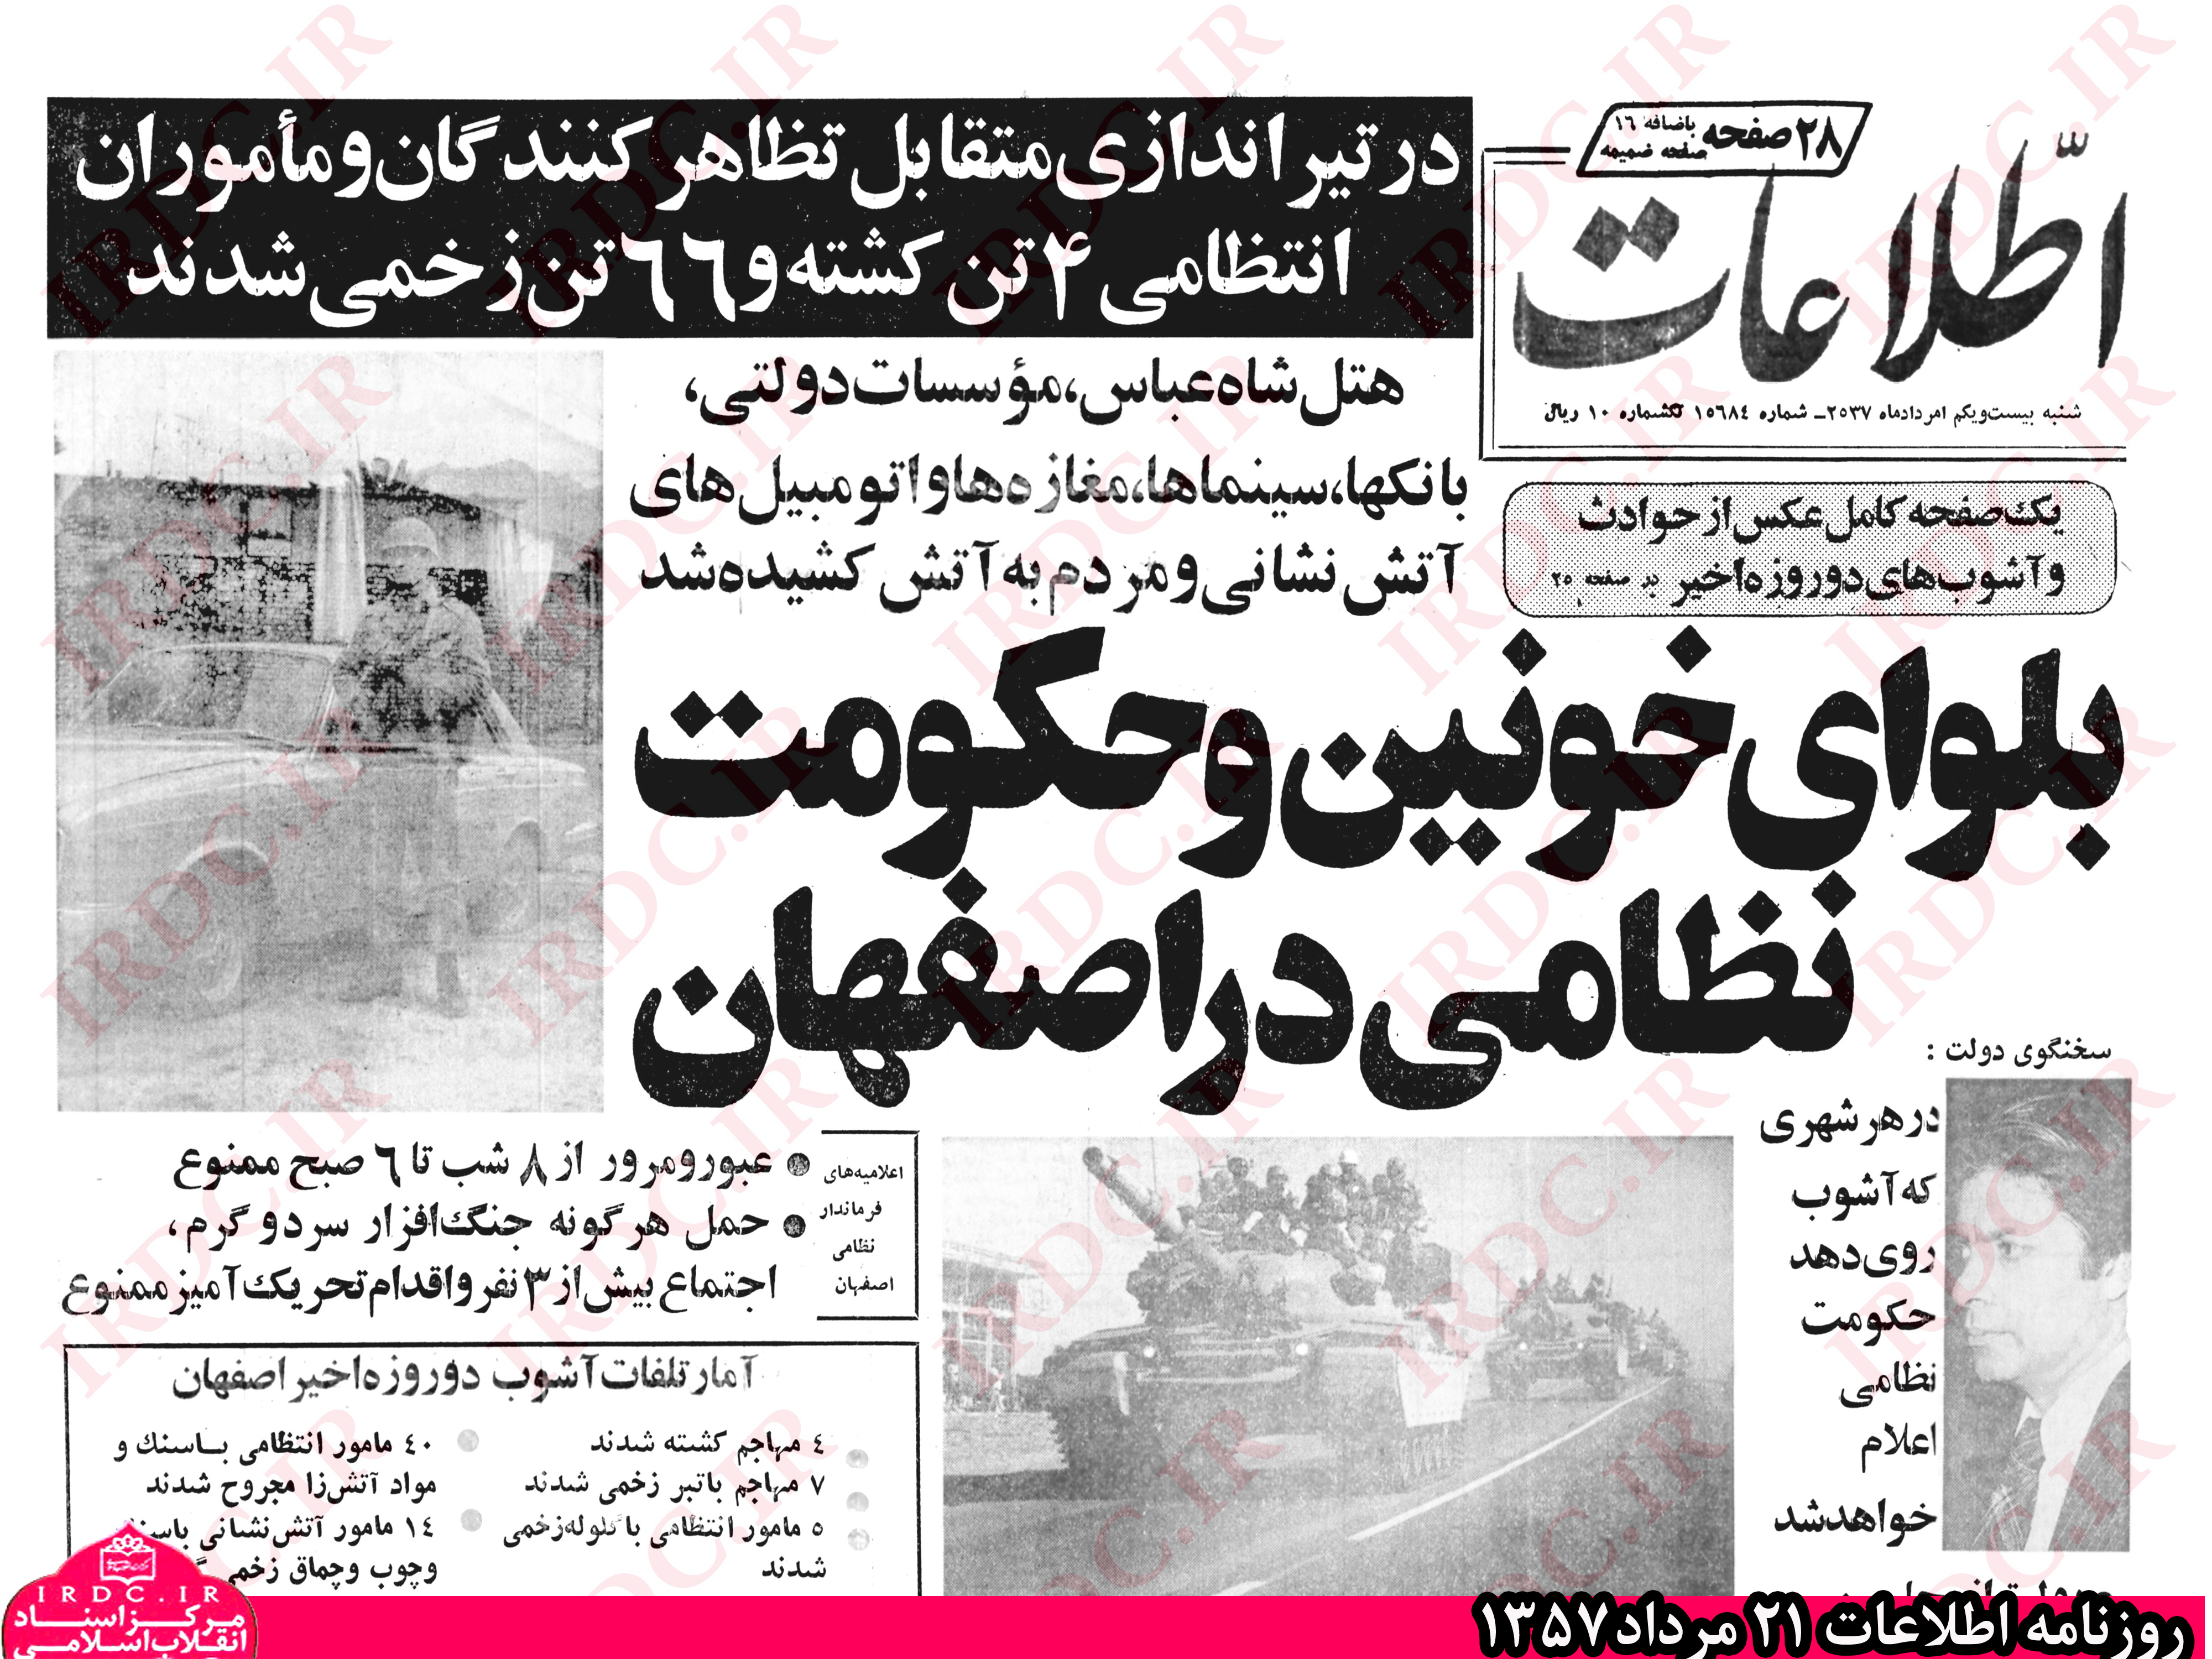 اولین حکومت نظامی رژیم پهلوی در کدام استان اعلام شد؟ + سند